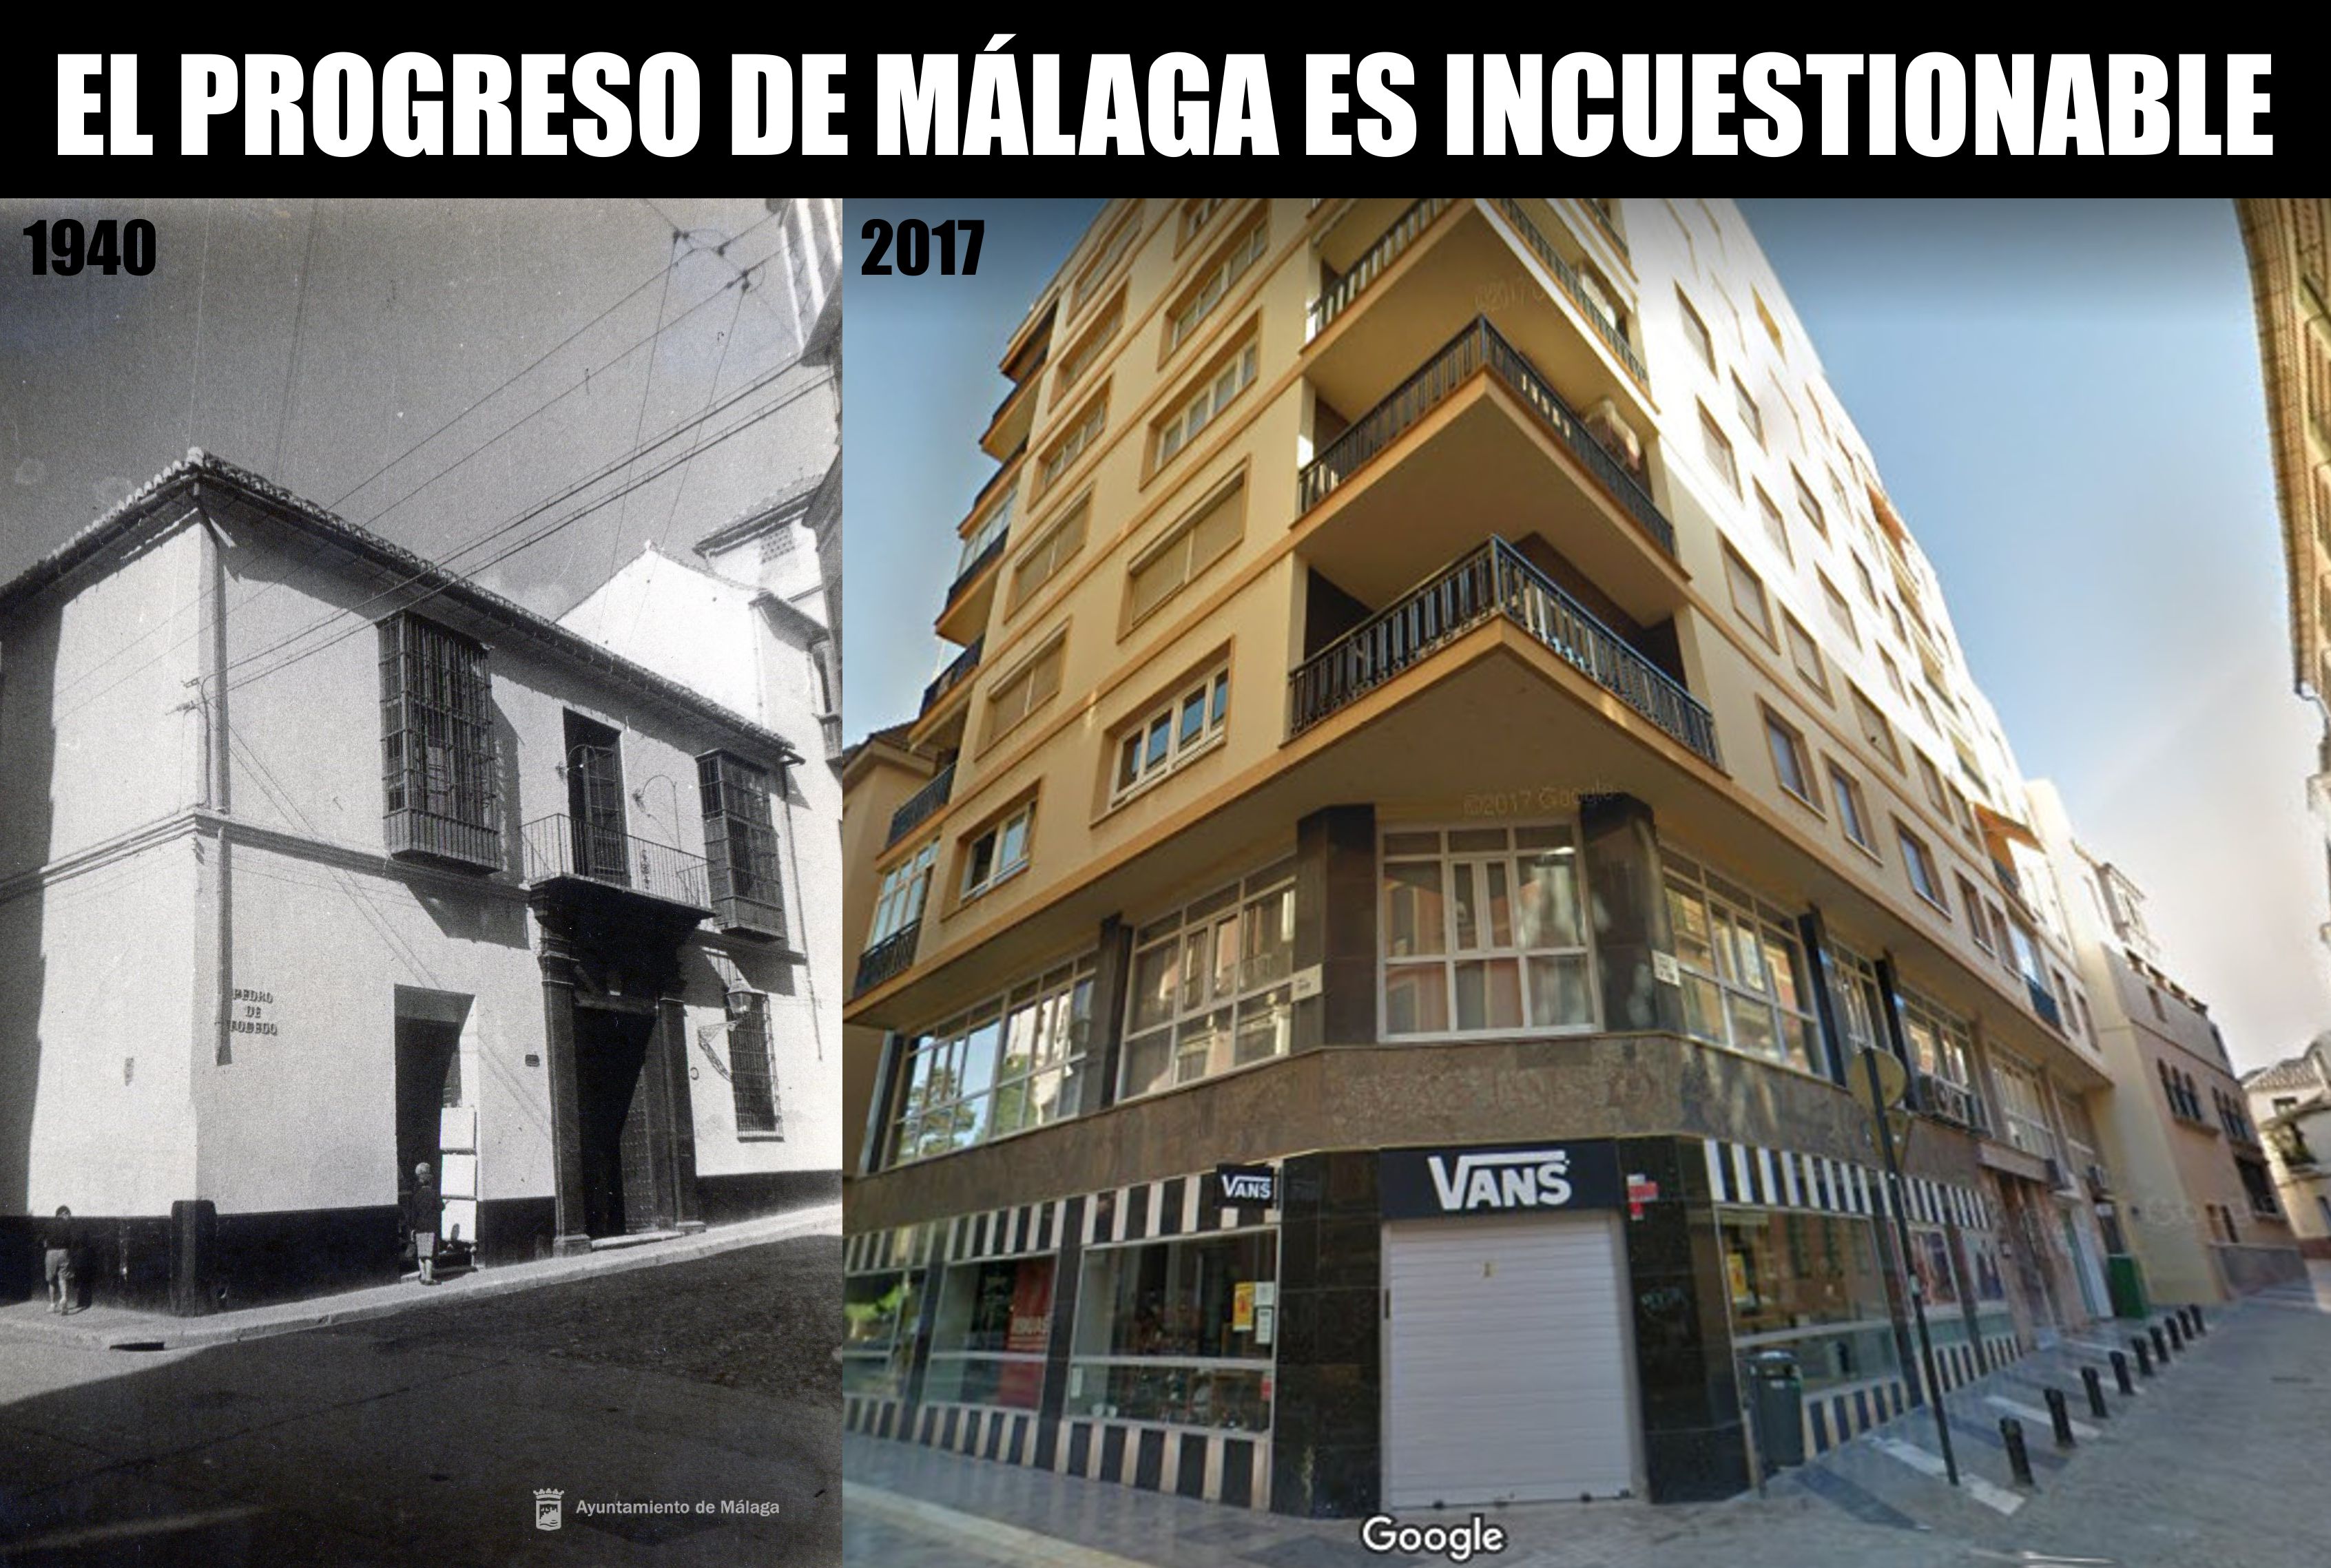 Edifeicios Málaga #RIPLaMundial on Twitter: "Este es el decadente palacete del siglo XVIII donde estaba la sede de las teresianas en Málaga, calle Pedro de Toledo esquina que fue